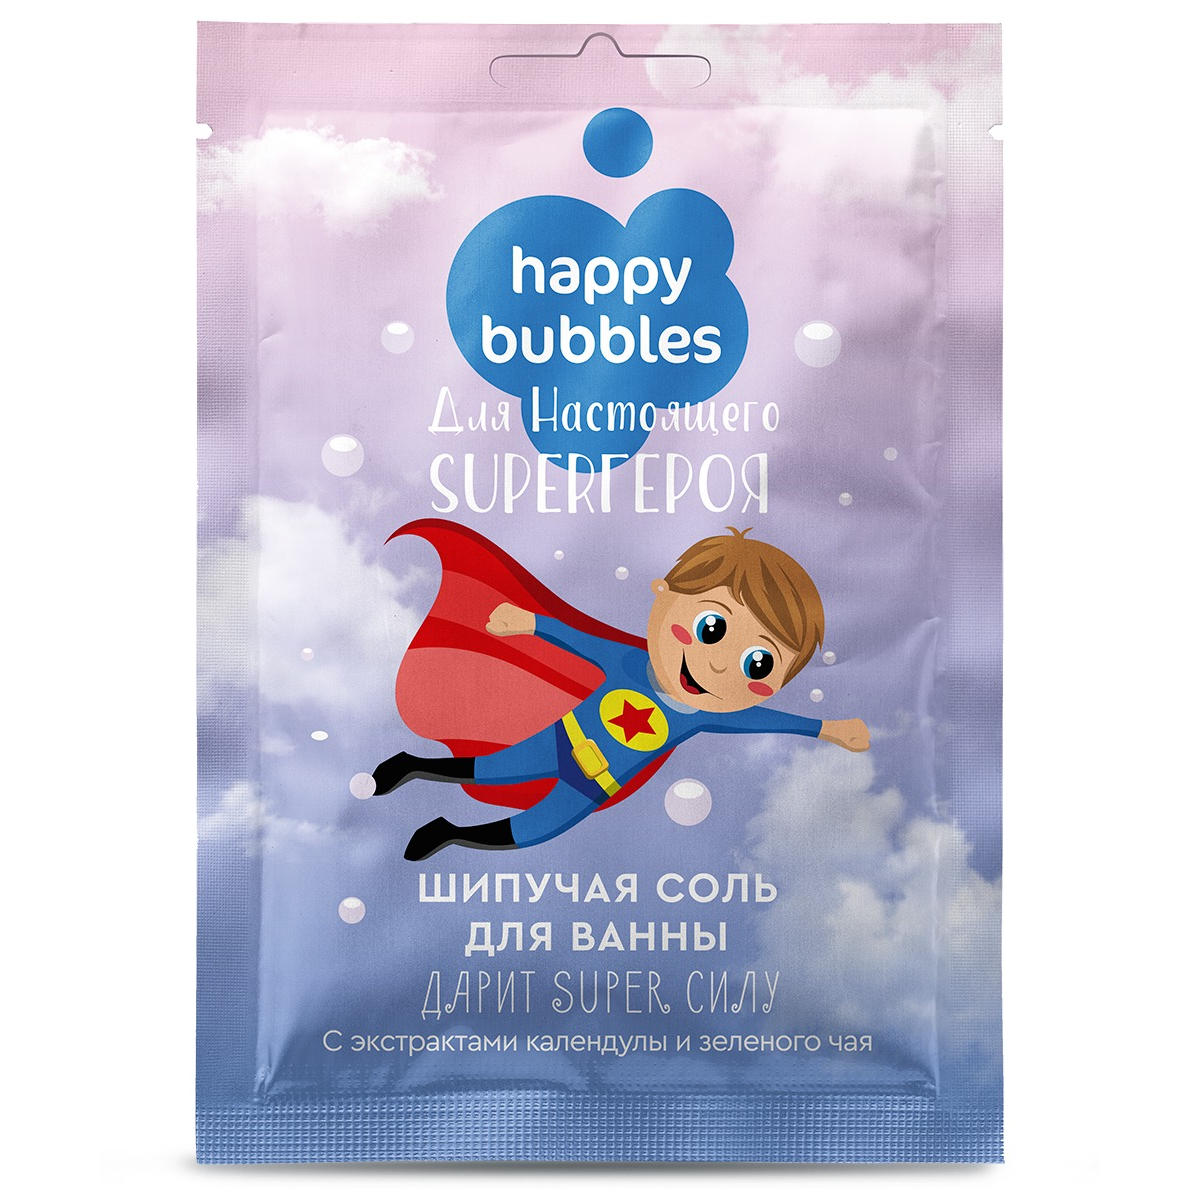 Соль для ванны Happy bubbles для настоя Super героя 100г соль для ванны с сухой пеной